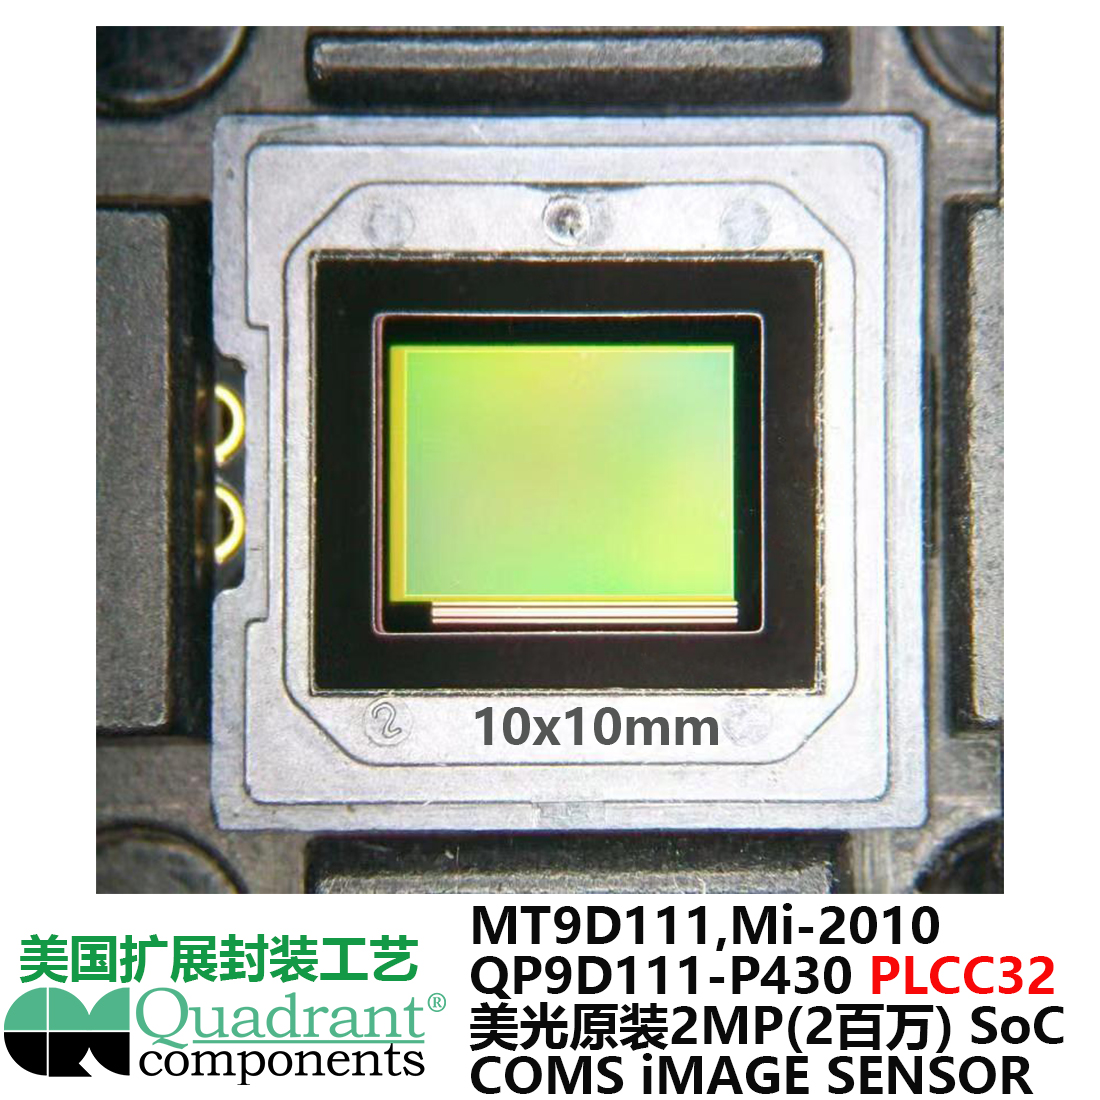 美光200万像素SoC, 美国扩展QUADRANT COMPONENTS, PLCC32封装工艺工业相机图像传感器,2MP CMOS SENSOR,1600x1200 cmos sensor,1/3-Inch 2-megapixel SOC, 片上系统 Sensor Module